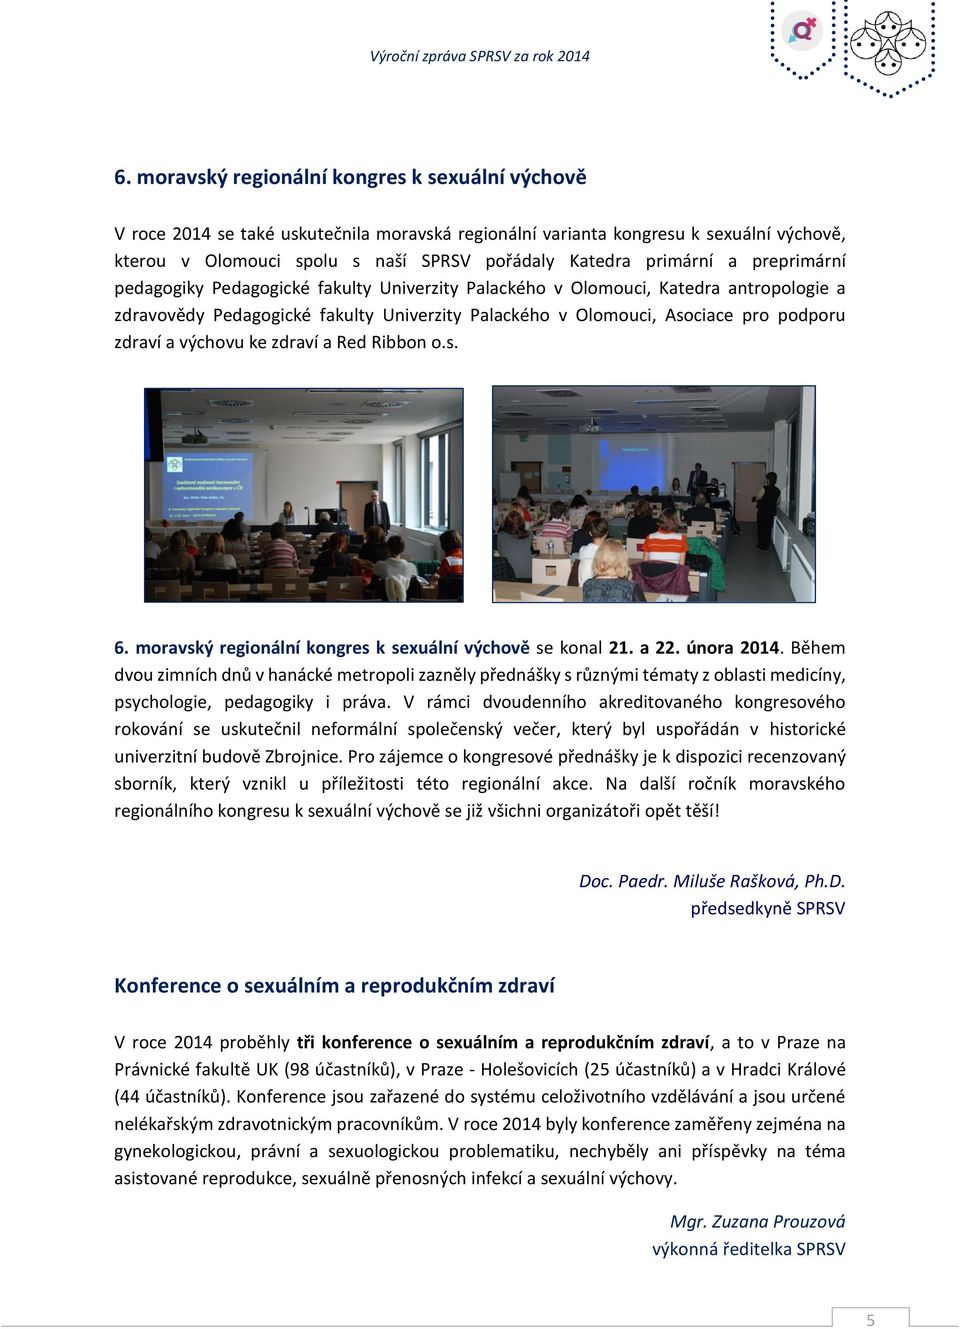 zdraví a výchovu ke zdraví a Red Ribbon o.s. 6. moravský regionální kongres k sexuální výchově se konal 21. a 22. února 2014.